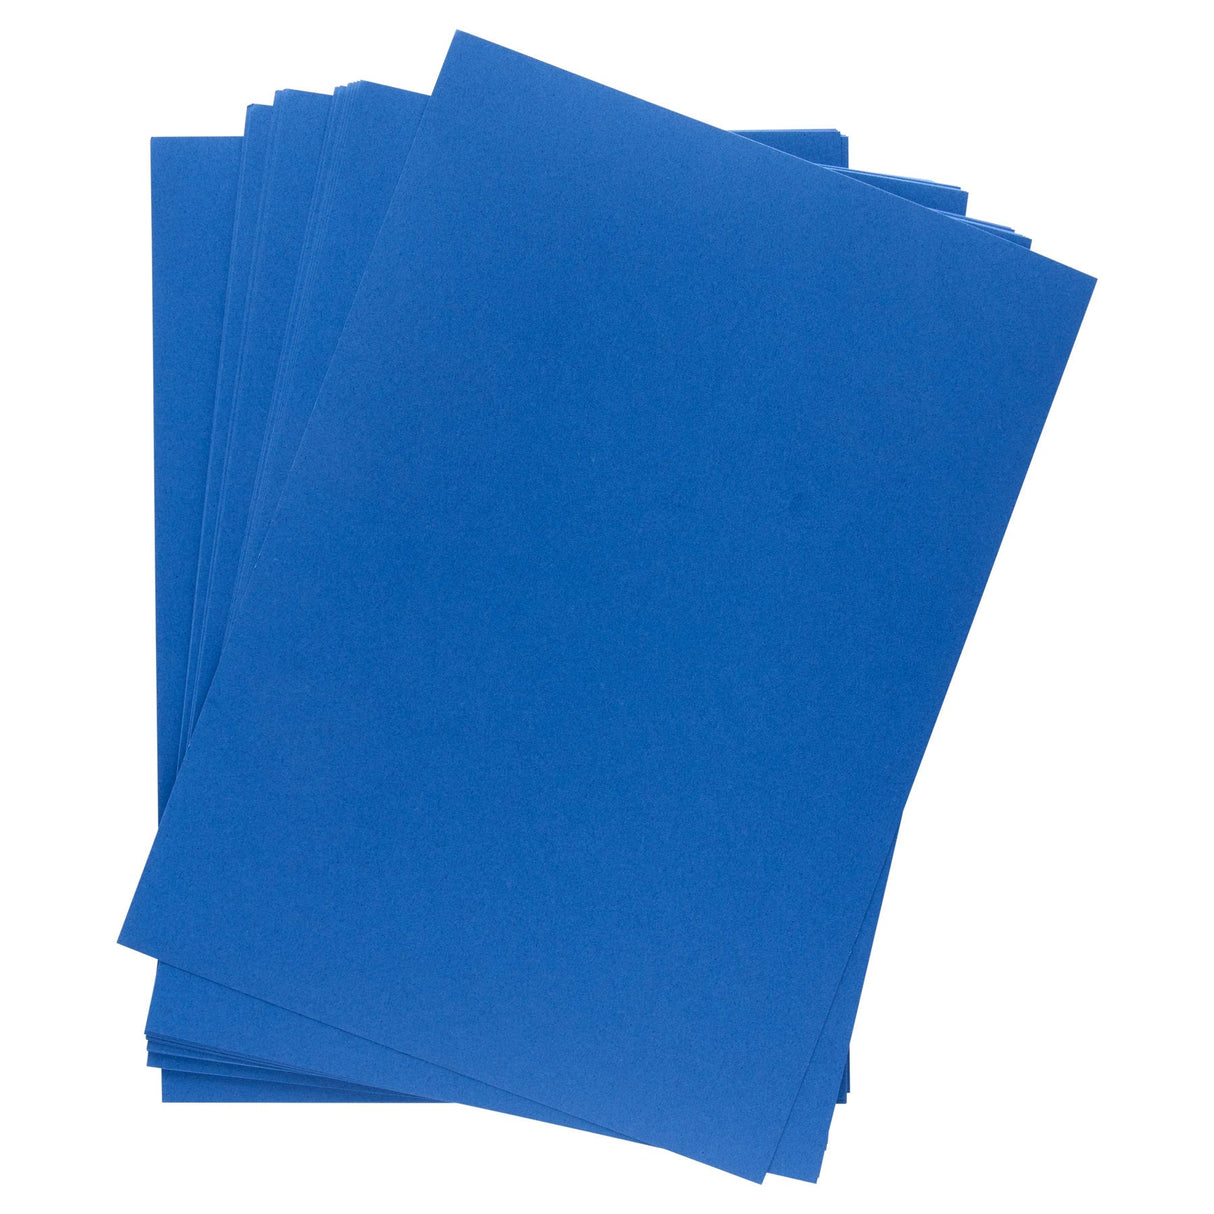 Premier Activity A4 Card - 160 gsm - Cobalt Blue - 50 Sheets-Craft Paper & Card-Premier | Buy Online at Stationery Shop